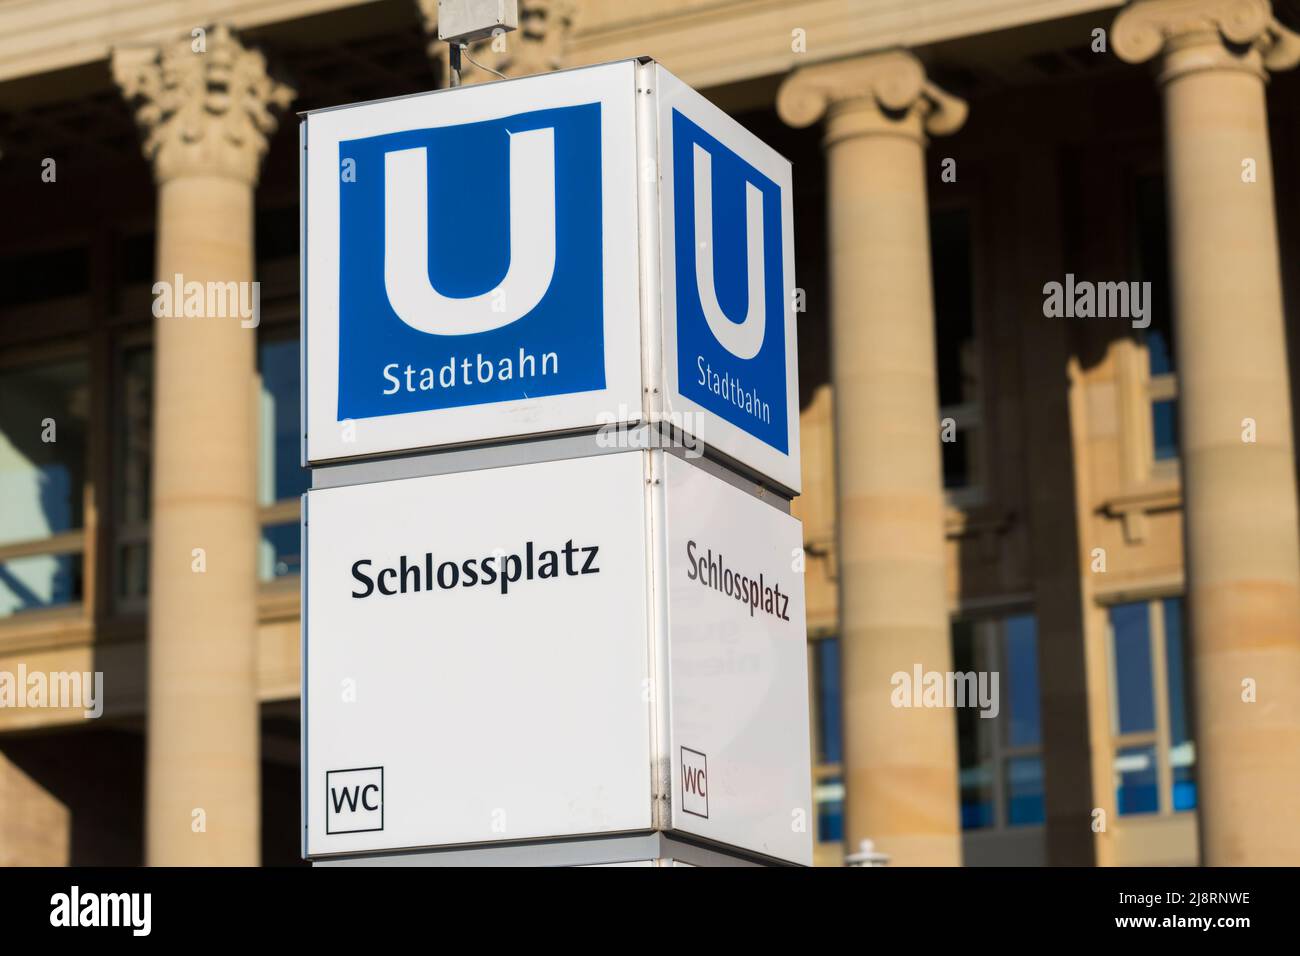 Stoccarda, Germania - 27 luglio 2021: Cartello che indica l'ingresso alla stazione della metropolitana Schlossplatz. Foto Stock